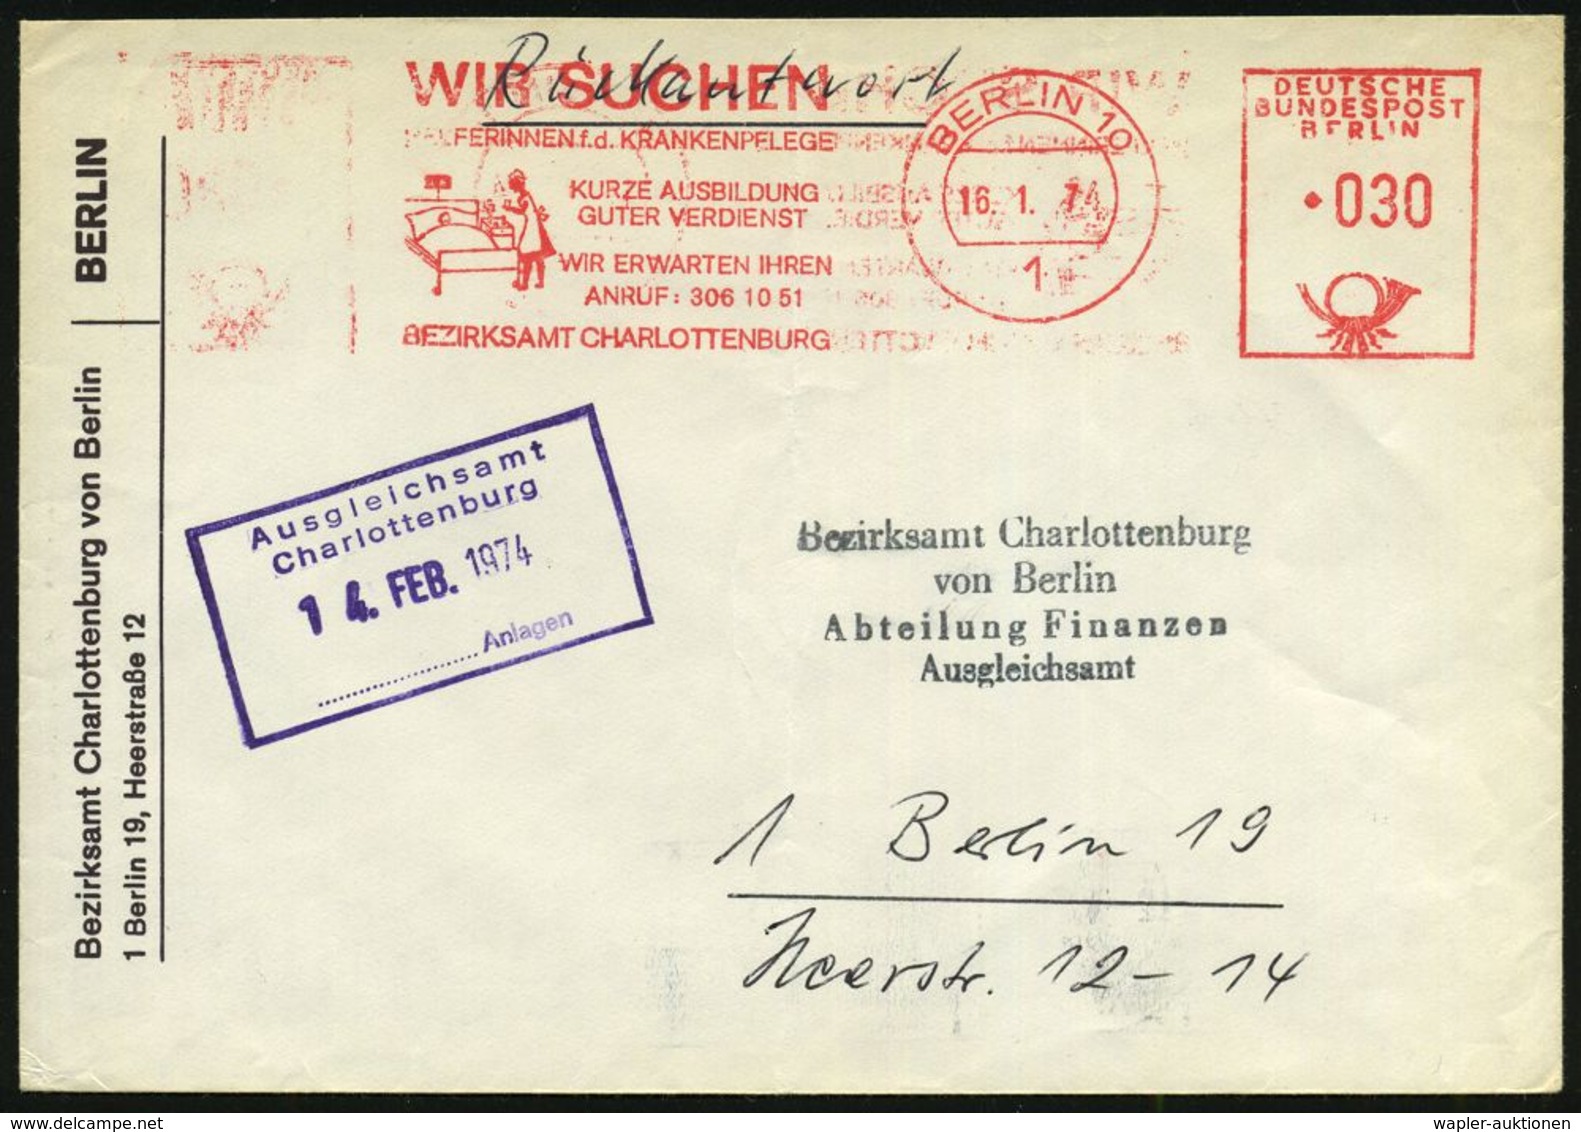 MEDIZIN / GESUNDHEITSWESEN : 1 BERLIN 10/ WIR SUCHEN/ HELFERINNEN F.d.KRANKENPFLEGE/ ..BEZIRKSAMT CHARLOTTENBURG 1974 (1 - Médecine